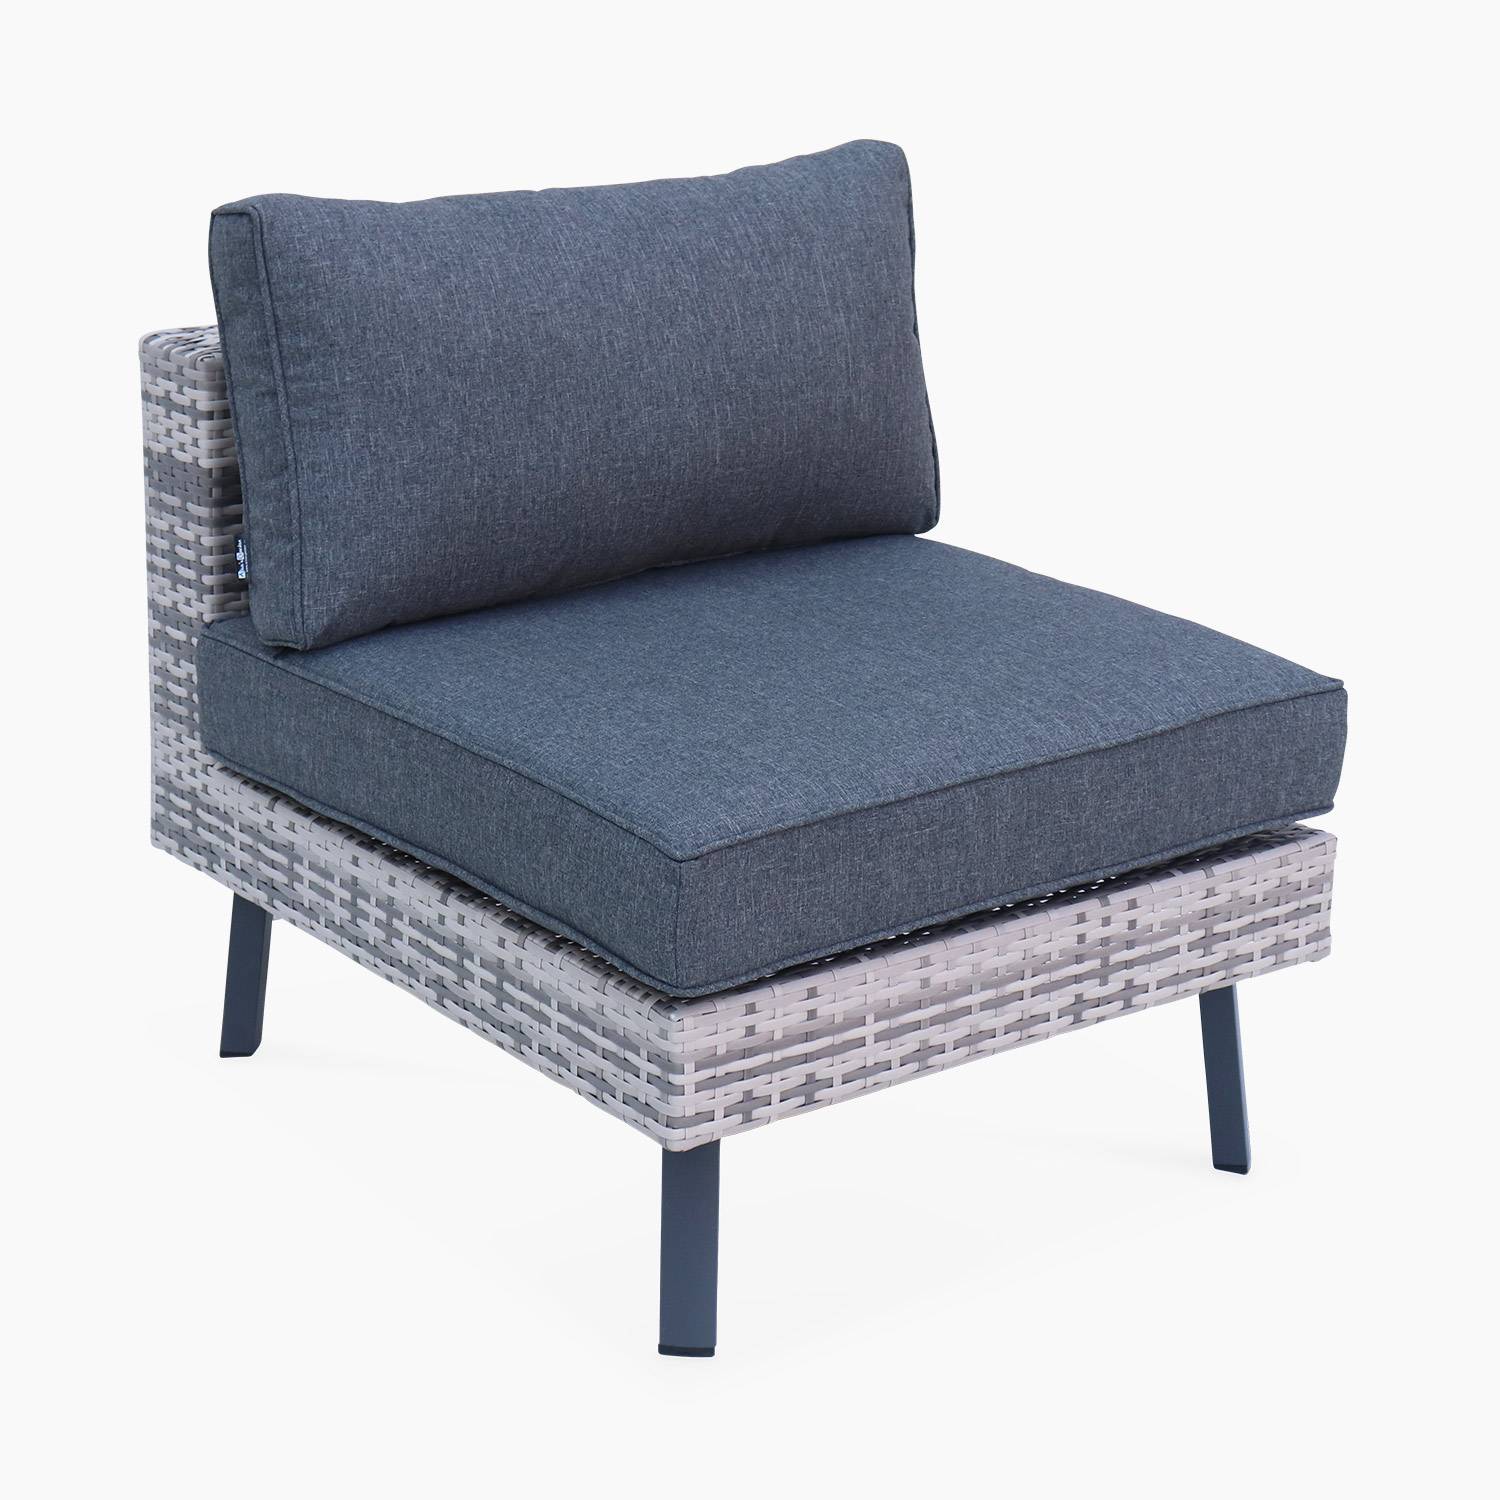 Loungeset 5 zitplaatsen in plat wicker, gemixt grijs wicker en donkergrijze kussens,sweeek,Photo4